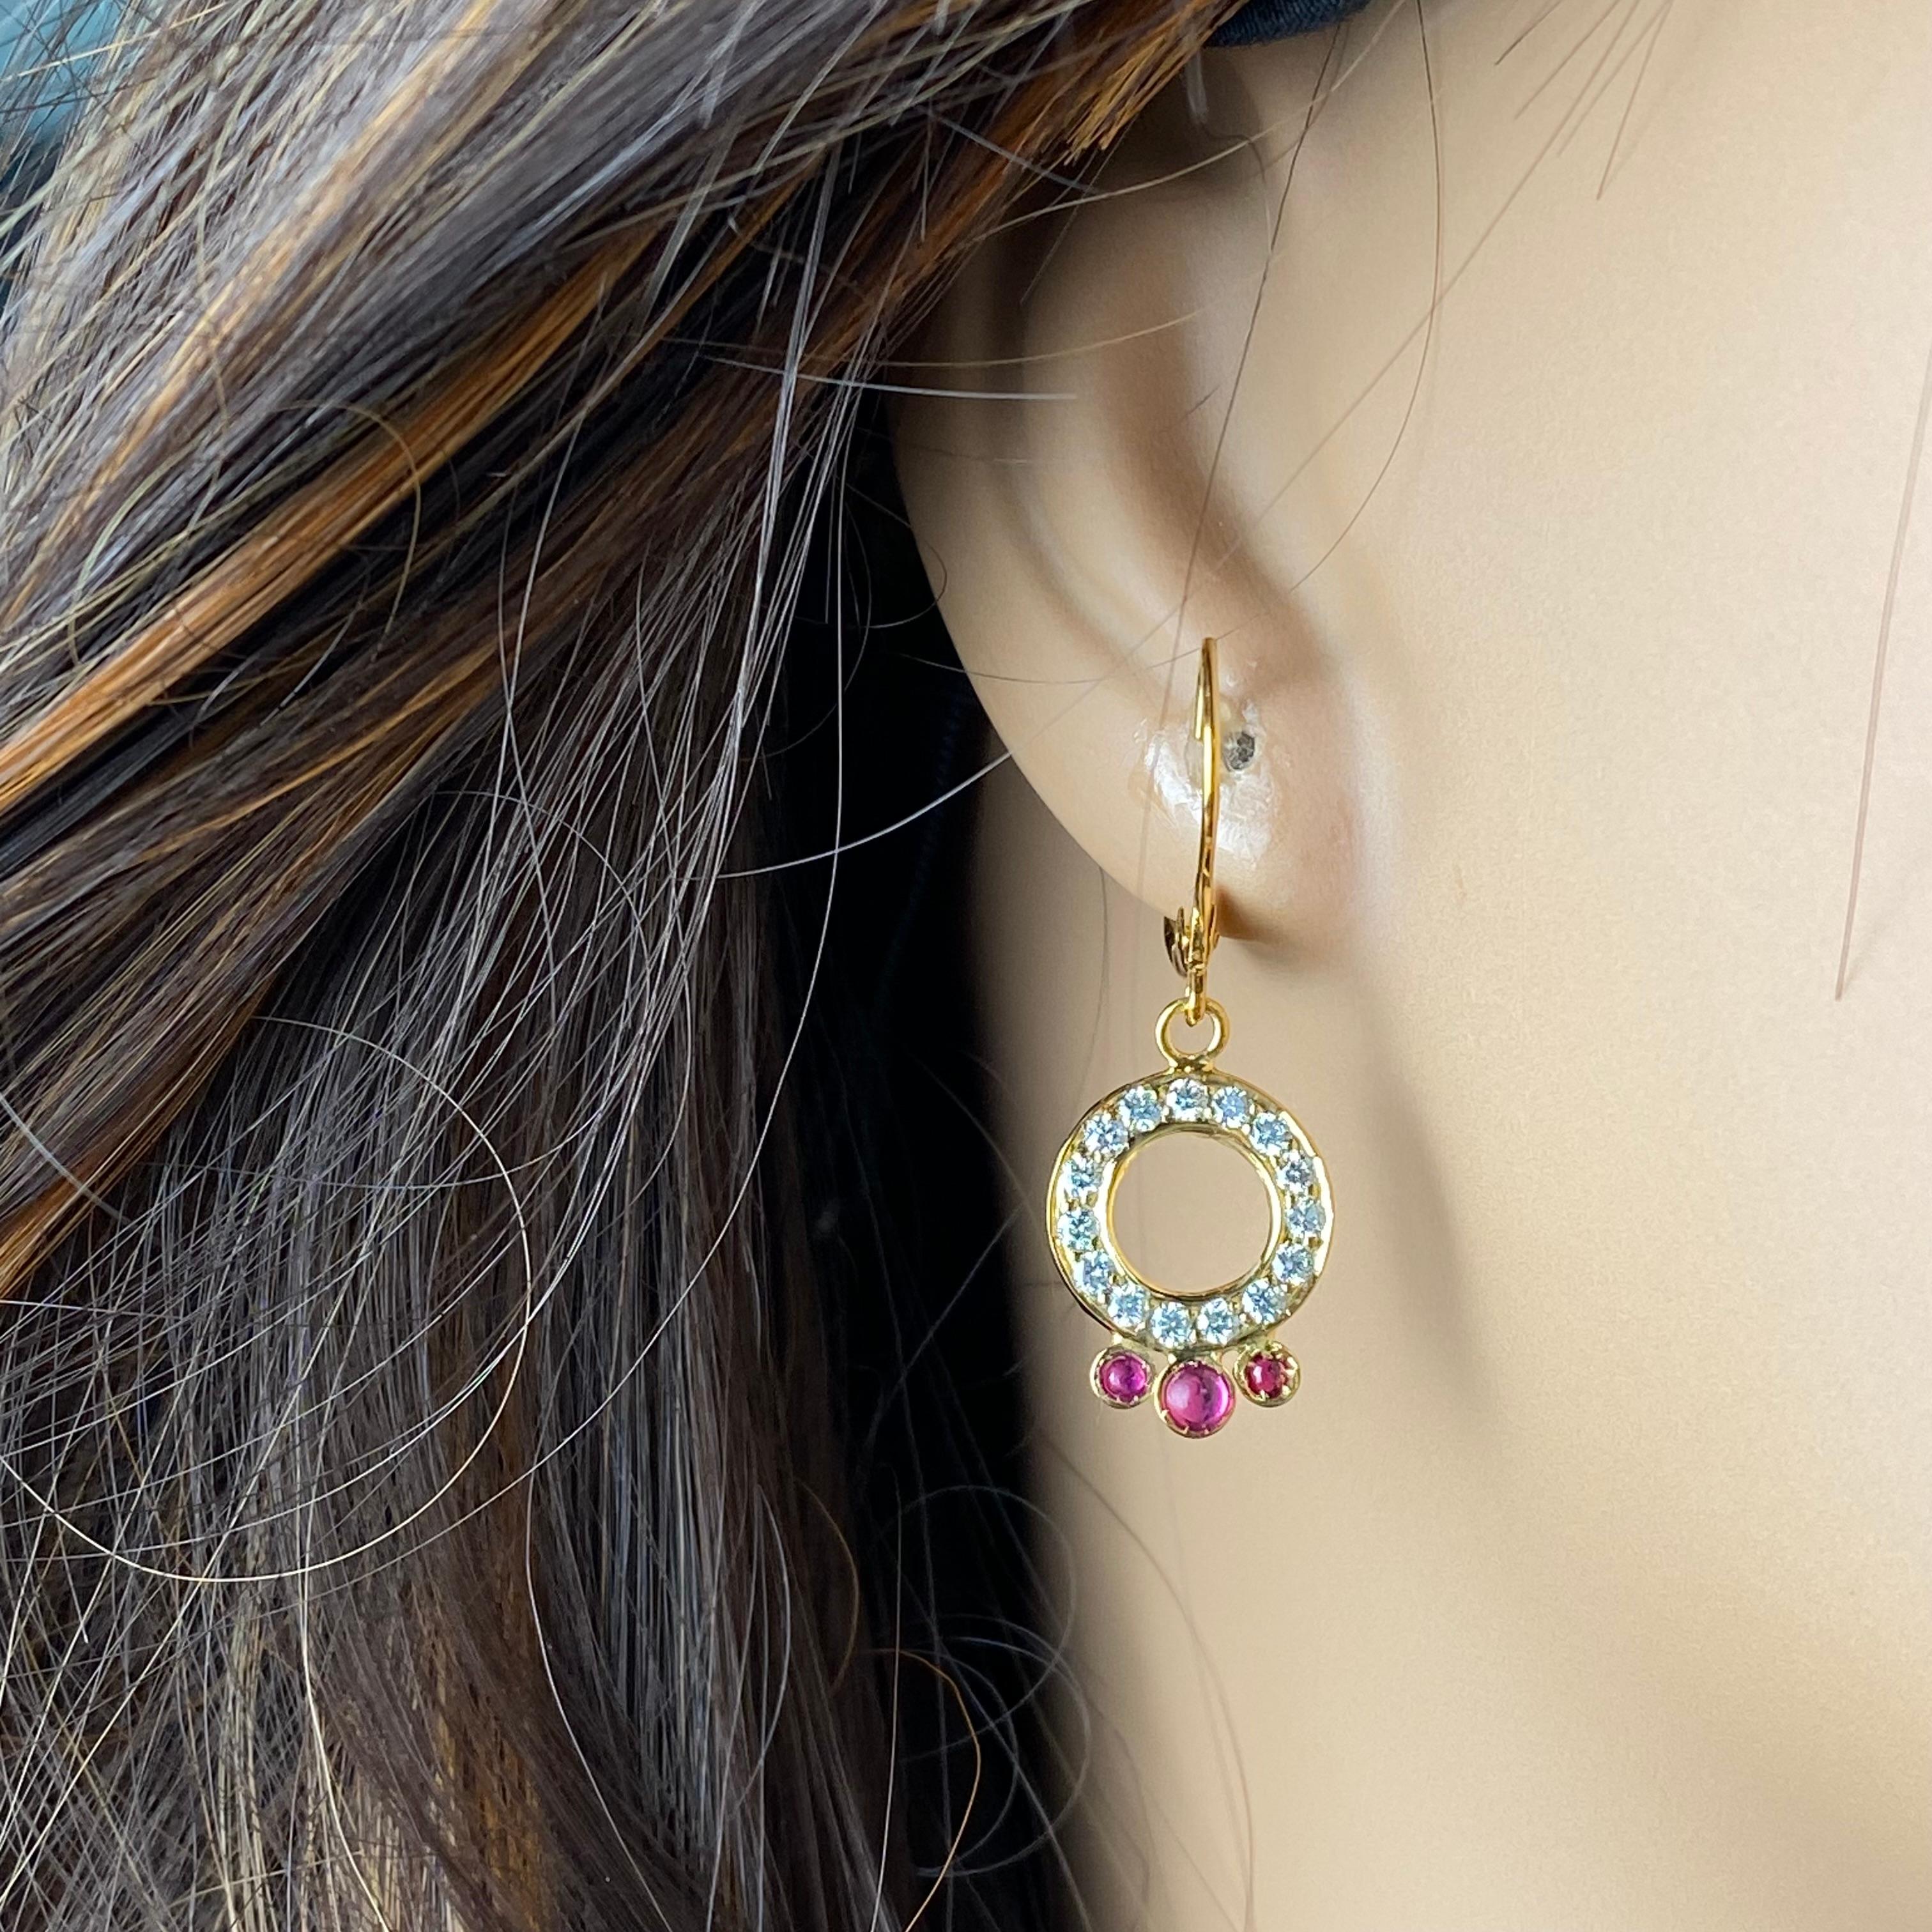 Wir präsentieren unsere exquisiten 14 Karat Gelbgold Ohrringe mit großen Diamanten, die eine atemberaubende Ergänzung für jede Schmucksammlung darstellen. Diese mit viel Liebe zum Detail gefertigten Ohrringe bestechen durch ihr Design, das mühelos